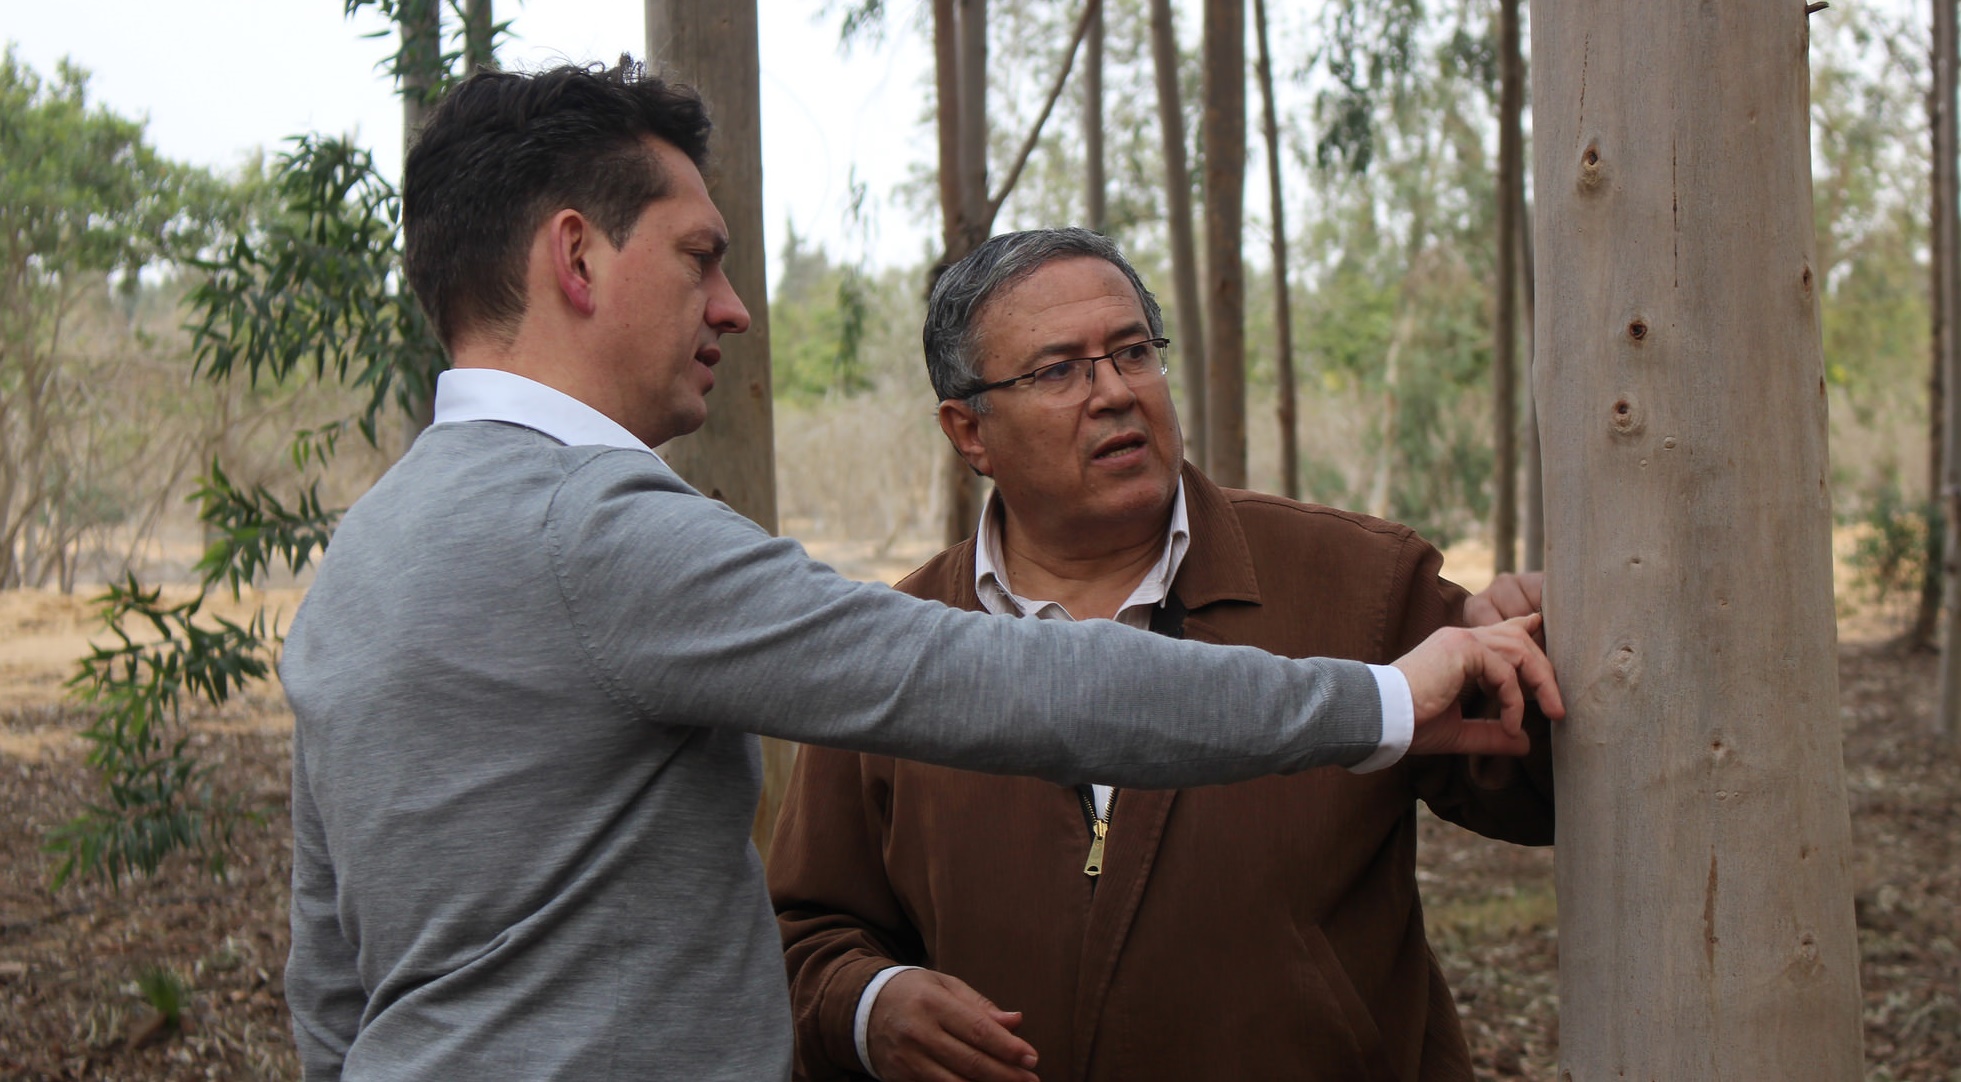 Dirk Walterspacher, Geschäftsführer der DesertTimber Consulting eG, und der ägyptische Forstwissenschaftler Dr. Hassan Hossam begutachten die Entwicklung eines neun Jahre alten Eukalyptusbaums. Foto: ForestFinance